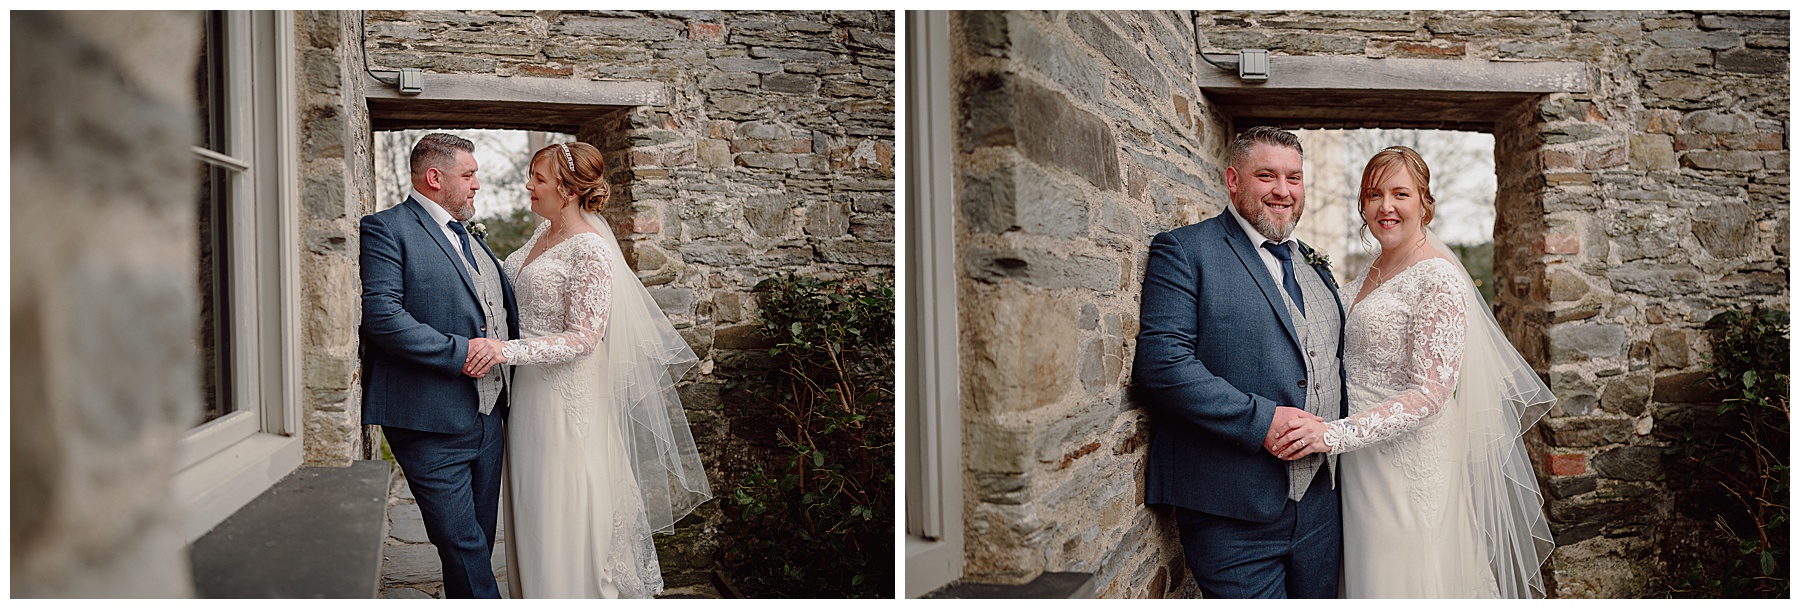 Bride & Groom Photos at Cardigan Castle Wedding